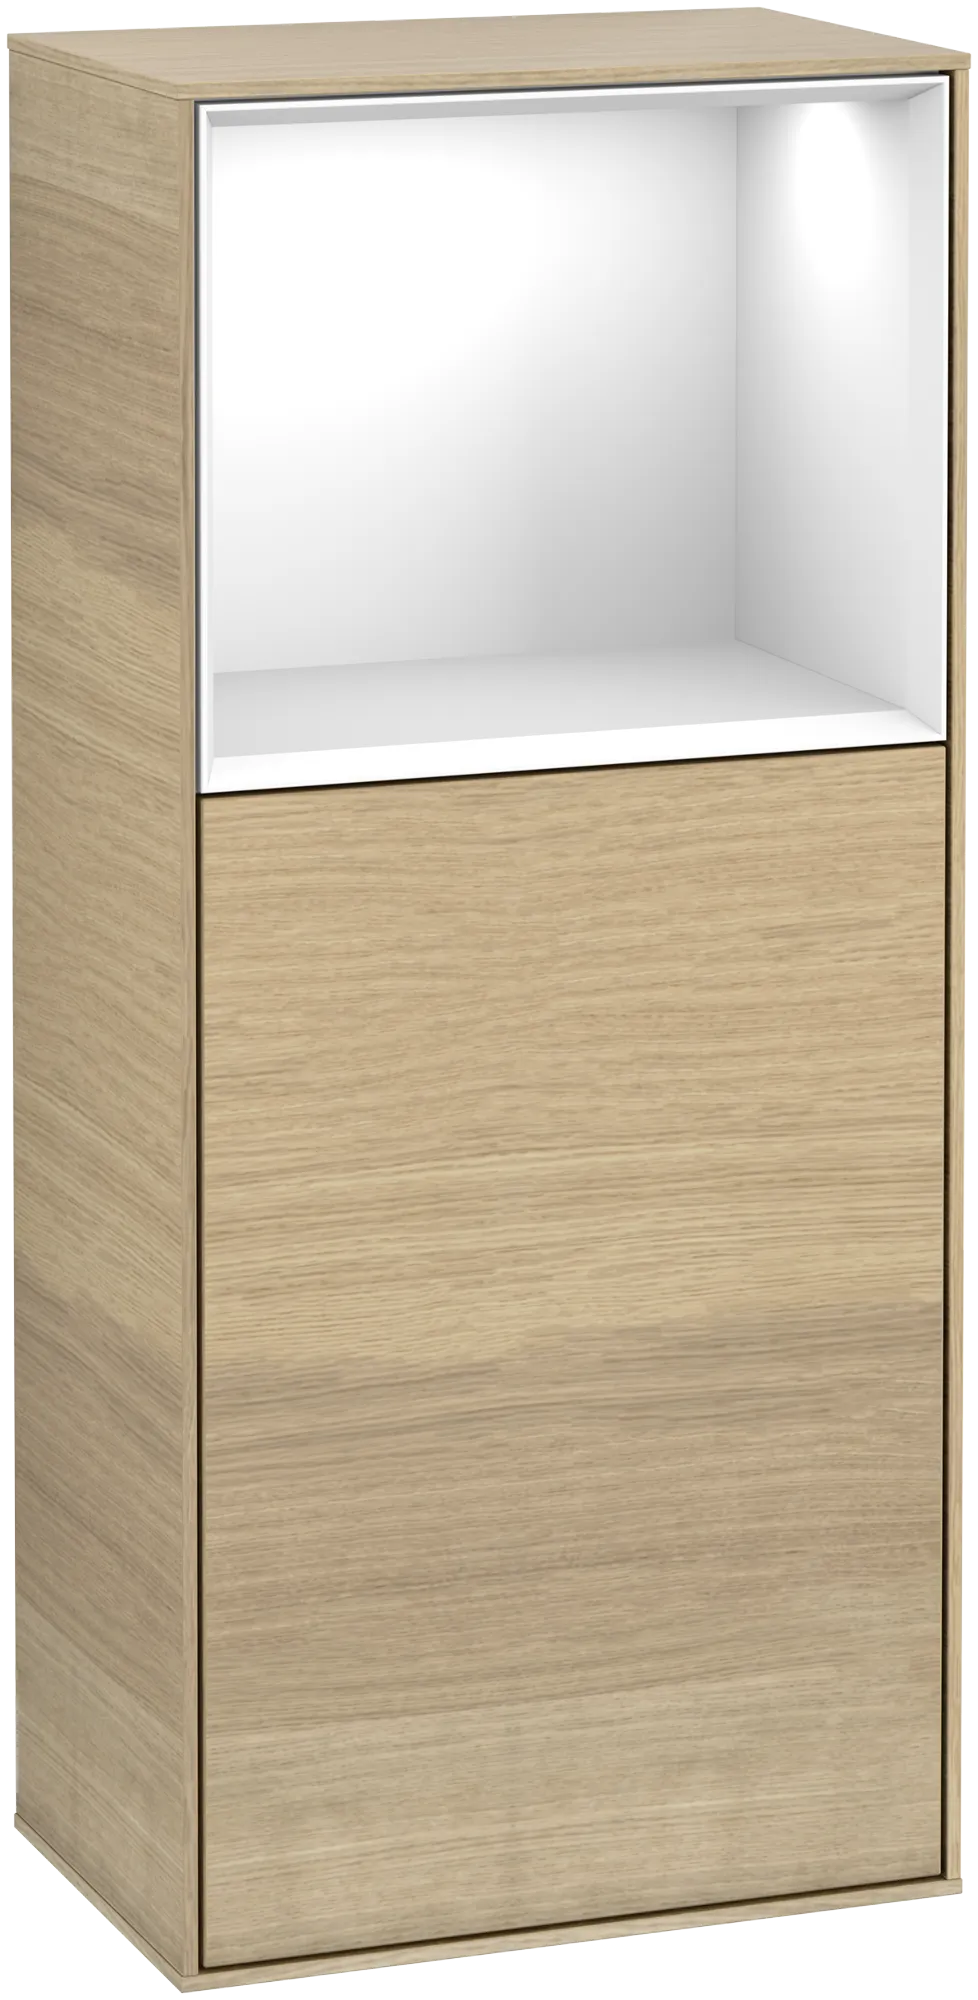 Bild von VILLEROY BOCH Finion Seitenschrank, mit Beleuchtung, 1 Tür, 418 x 936 x 270 mm, Oak Veneer / Glossy White Lacquer #G500GFPC